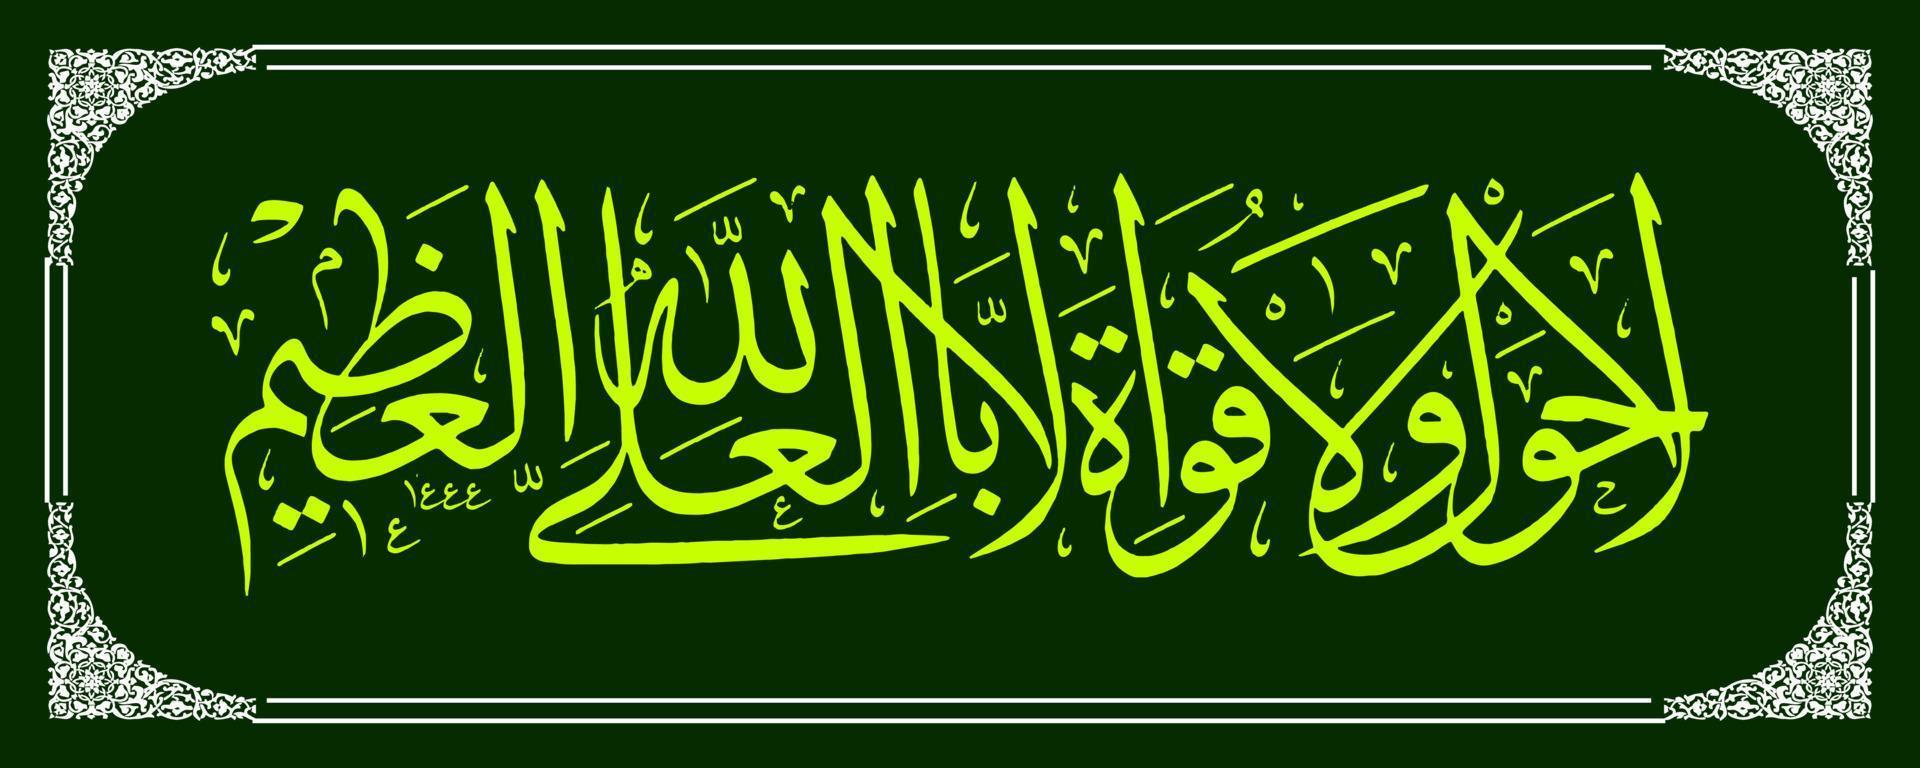 Arabisch kalligrafie, al koran vertaling Daar is Nee macht en inspanning behalve door de macht van Allah, de meest hoog, de meest groot. vector